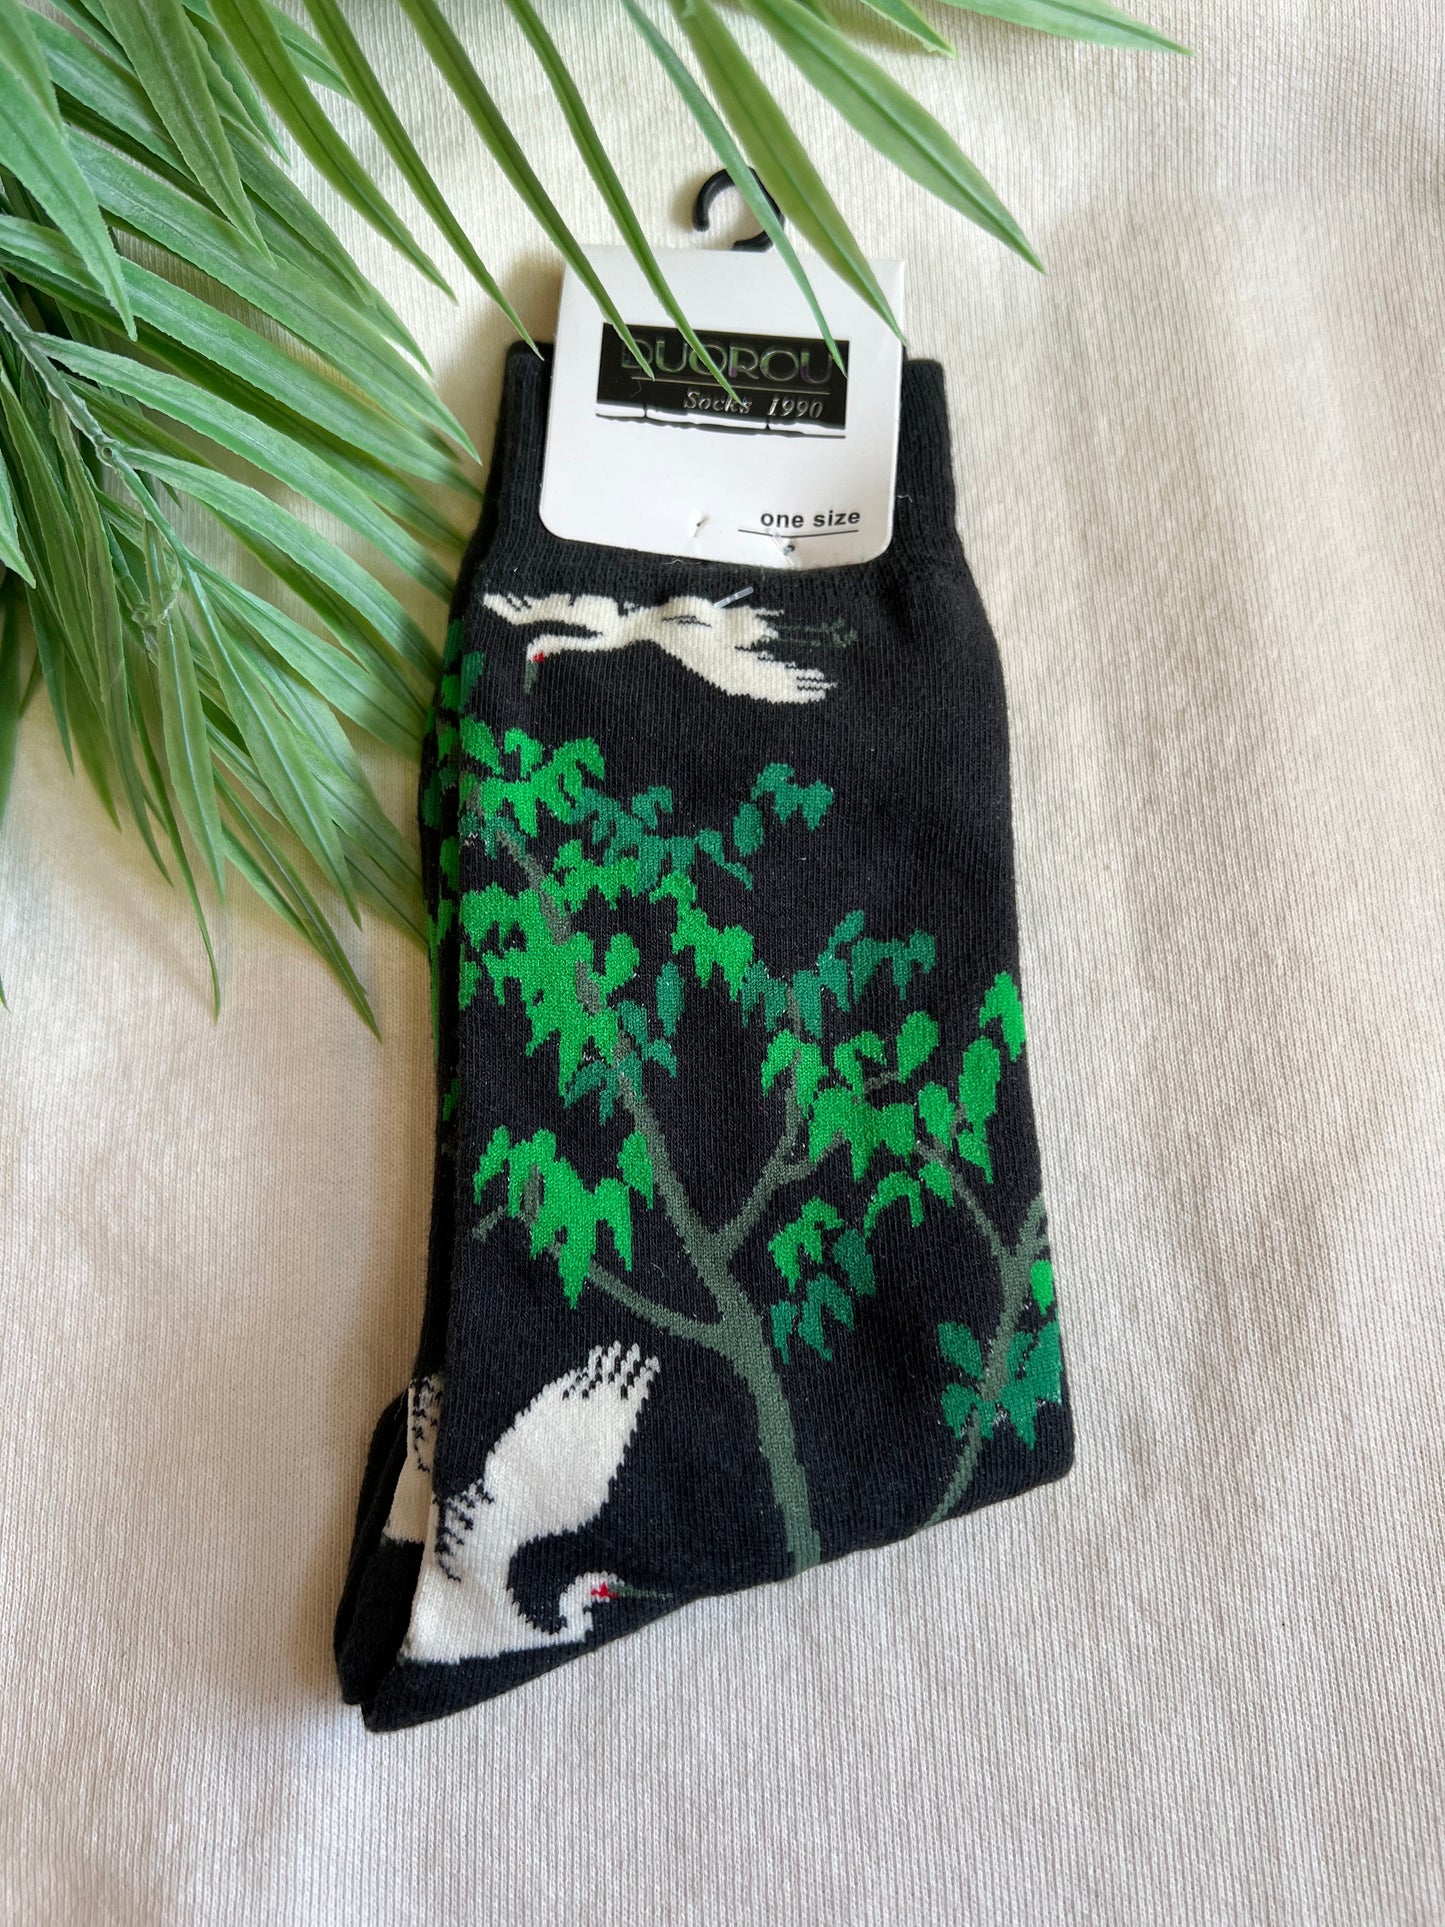 Bird and tree socks